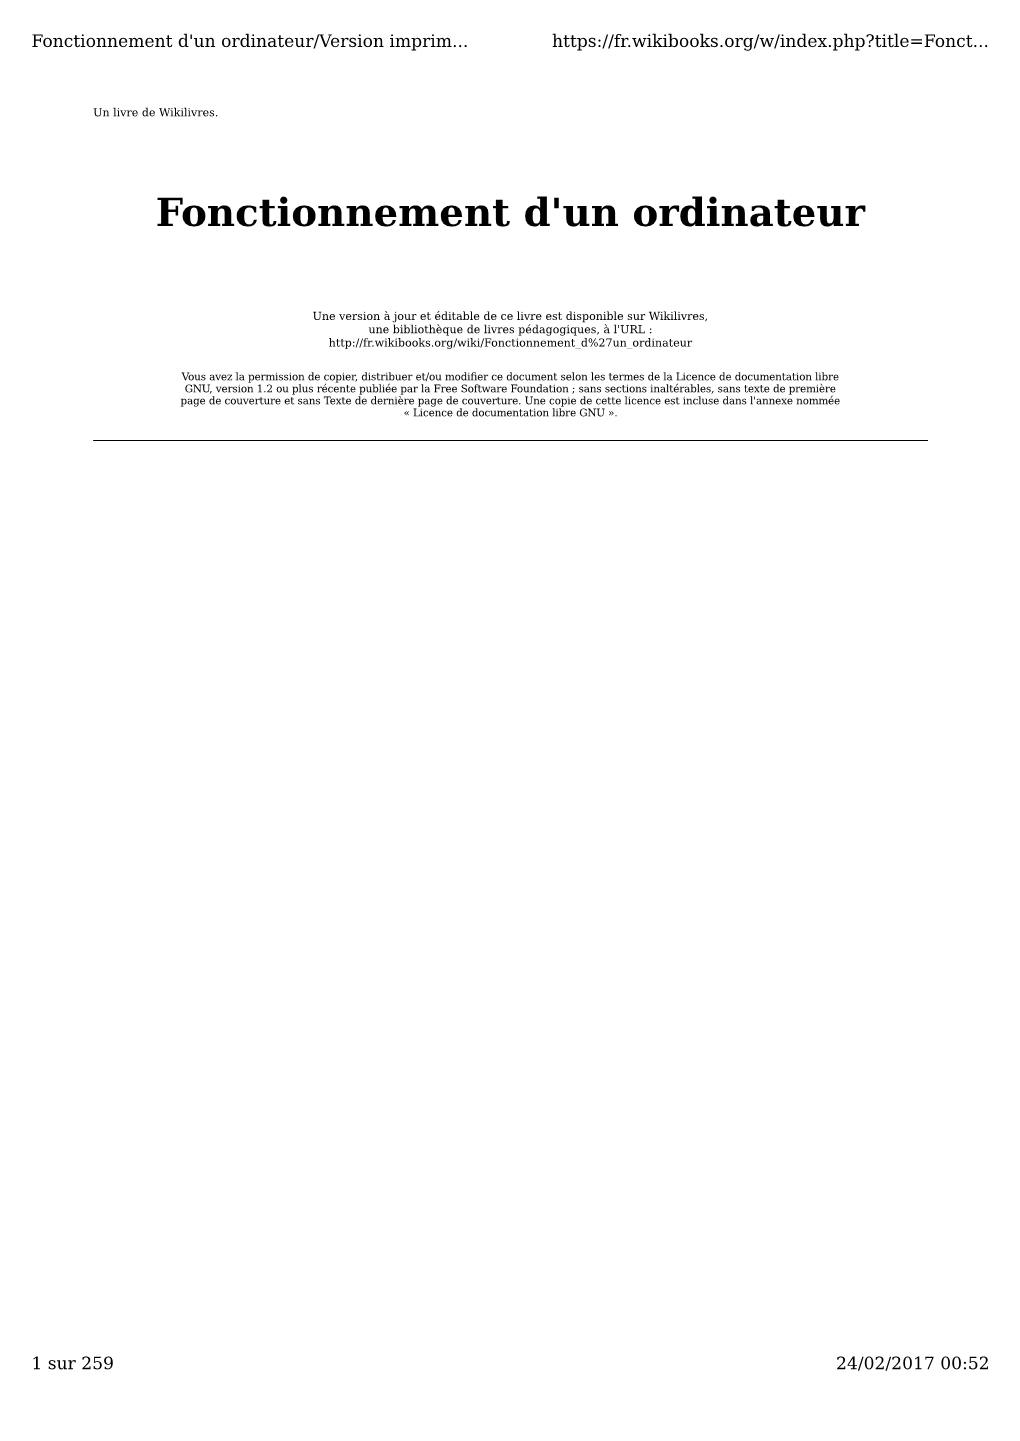 Fonctionnement D'un Ordinateur/Version Imprim